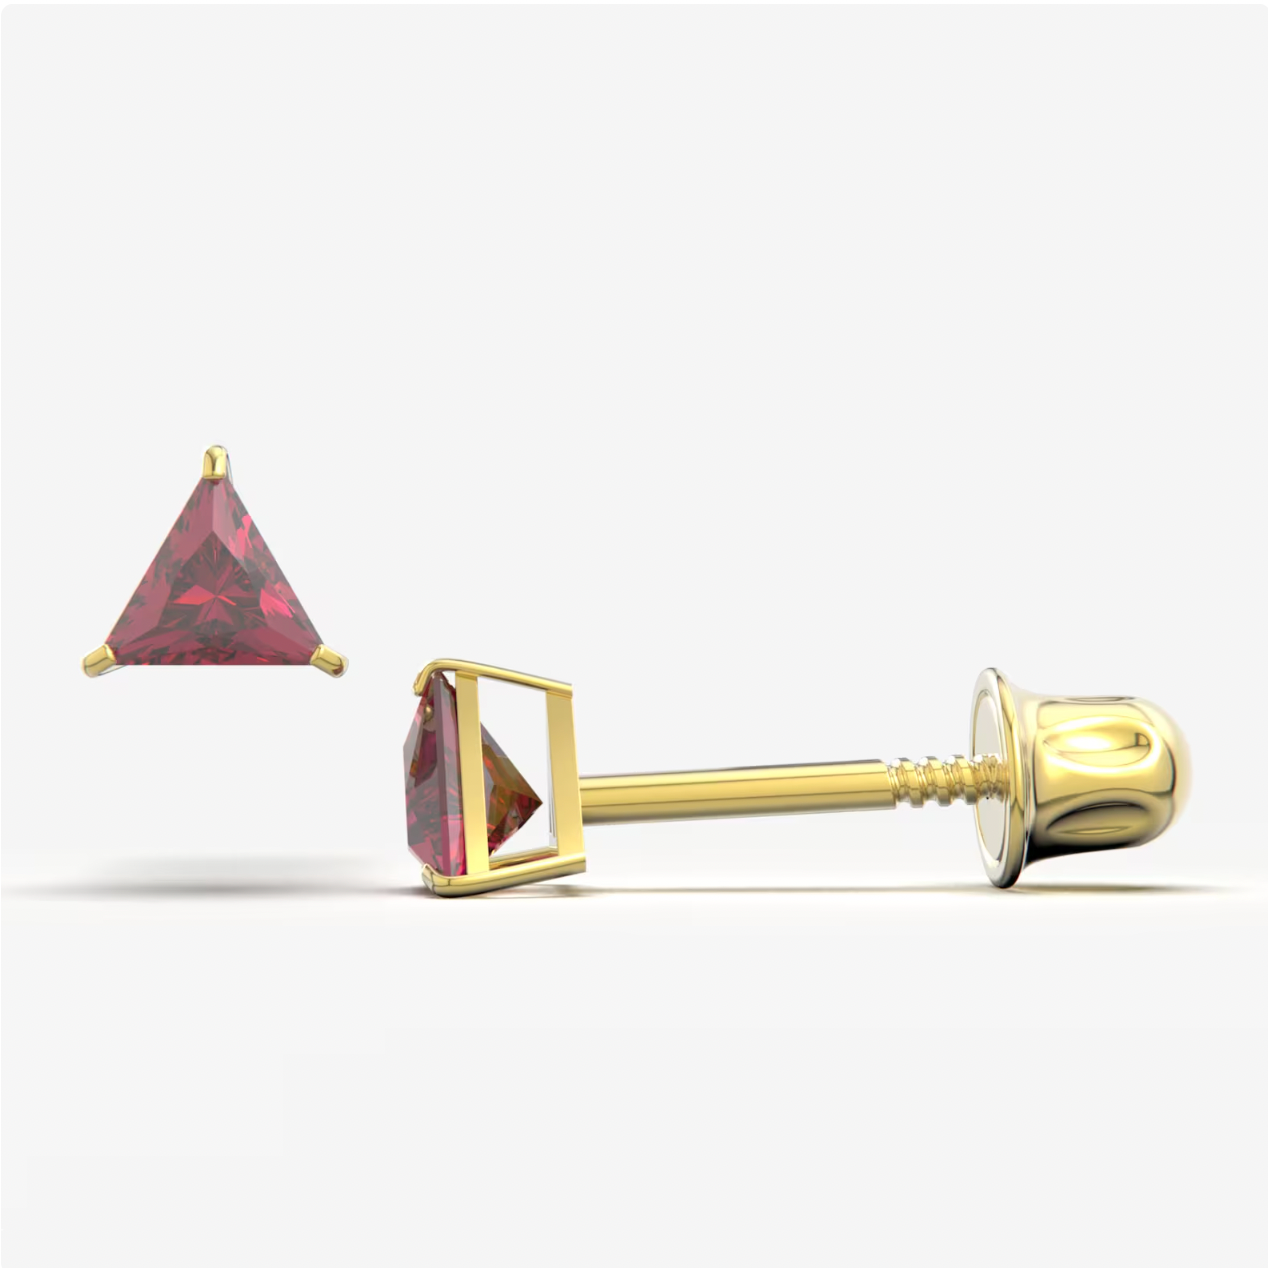 Garnet Bright Stone Zircon Triangle 14K Solid Gold Stud Earrings - BEYOND